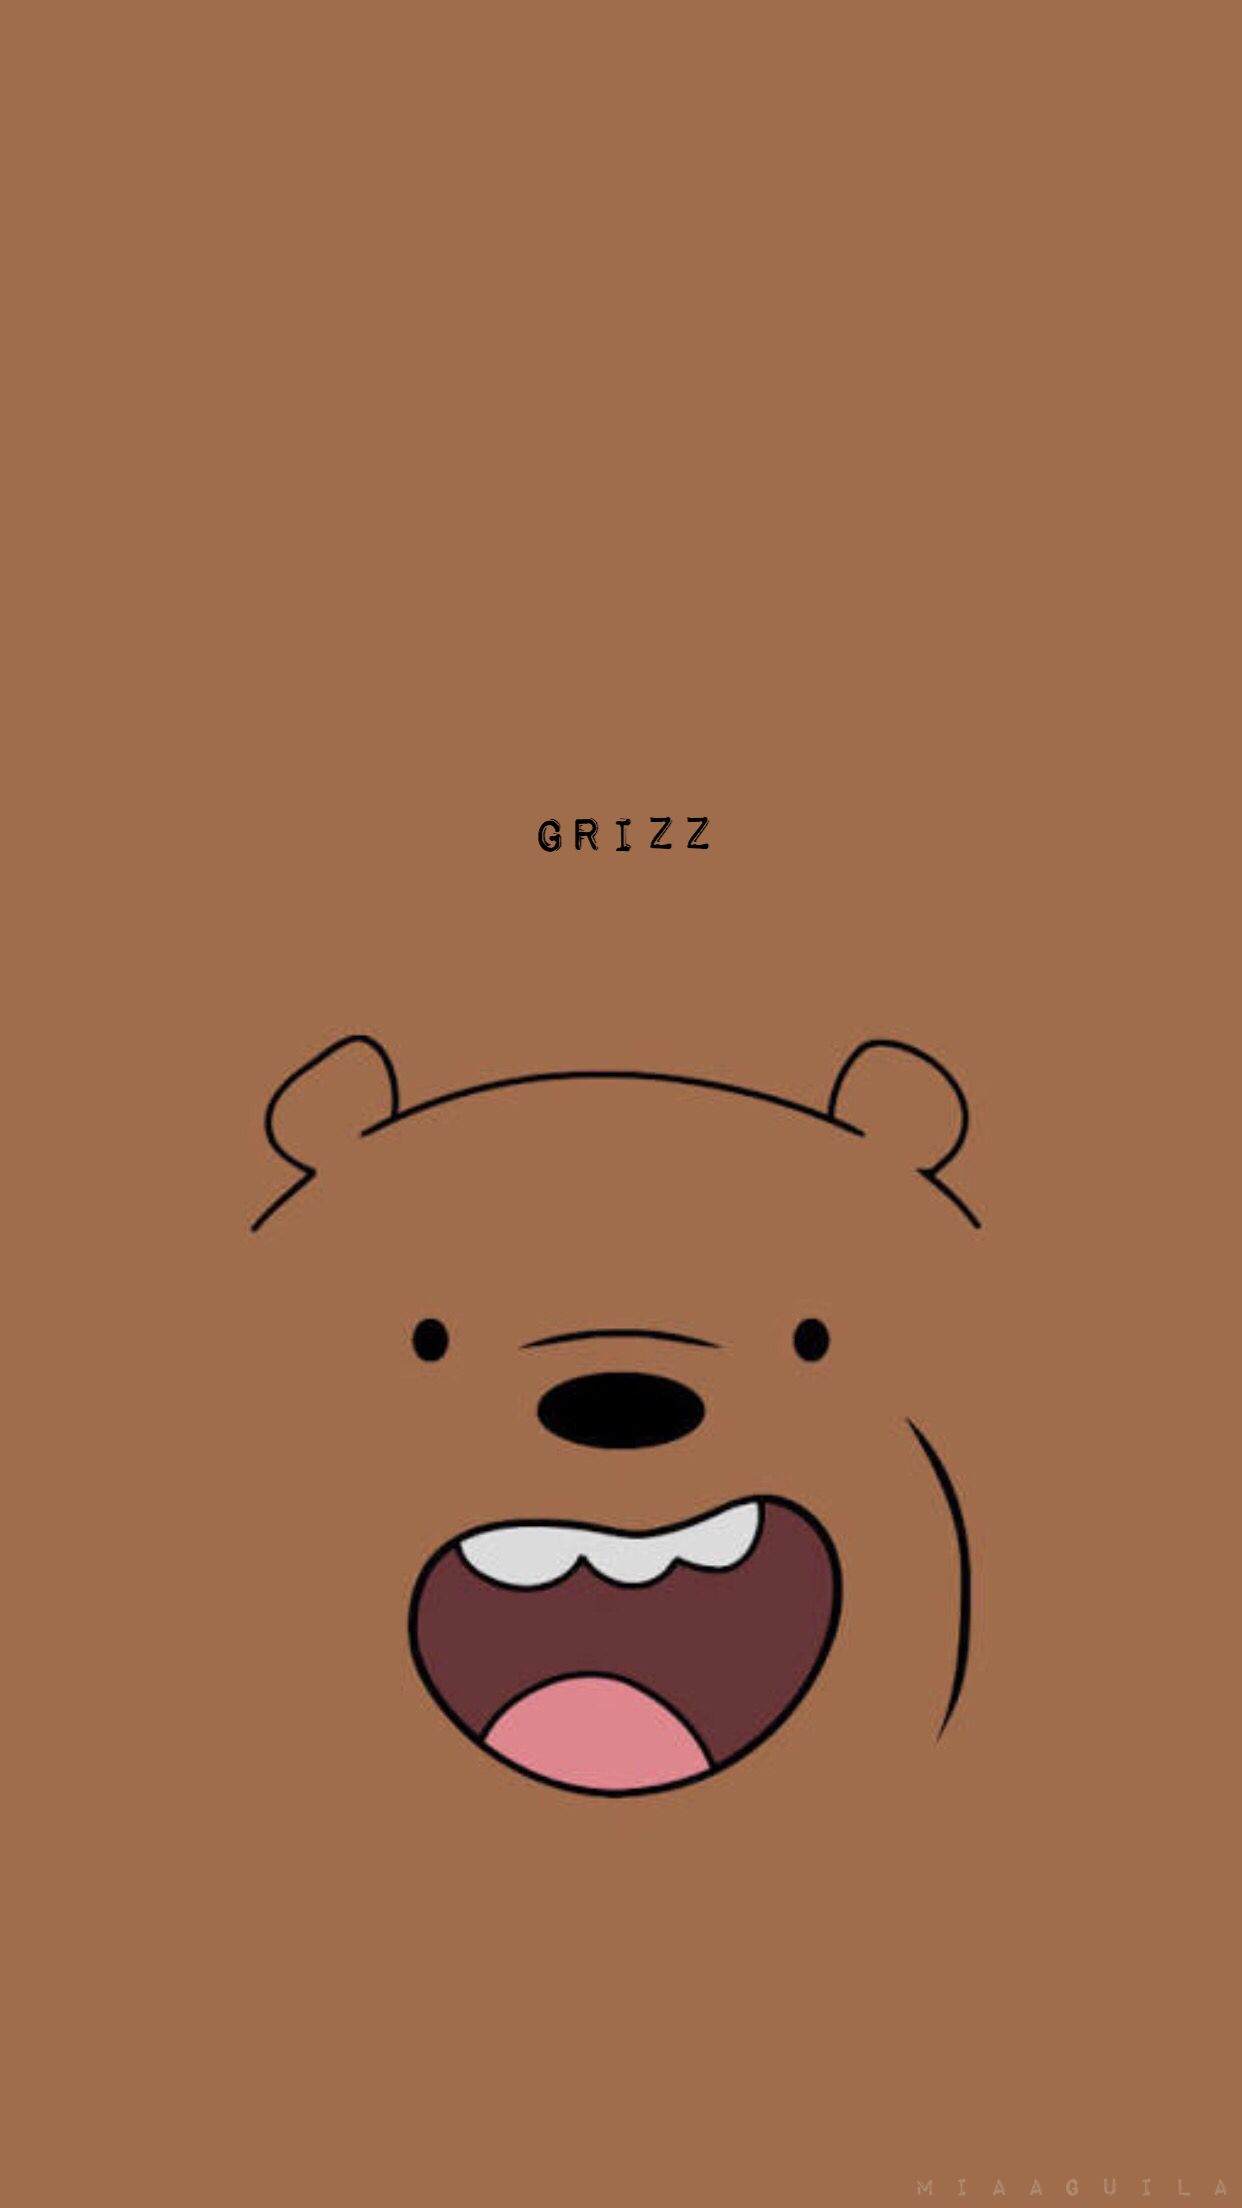 Gucci Polo Bear Wallpaper - iXpap  Bear wallpaper, Cute cartoon drawings,  Bear logo design